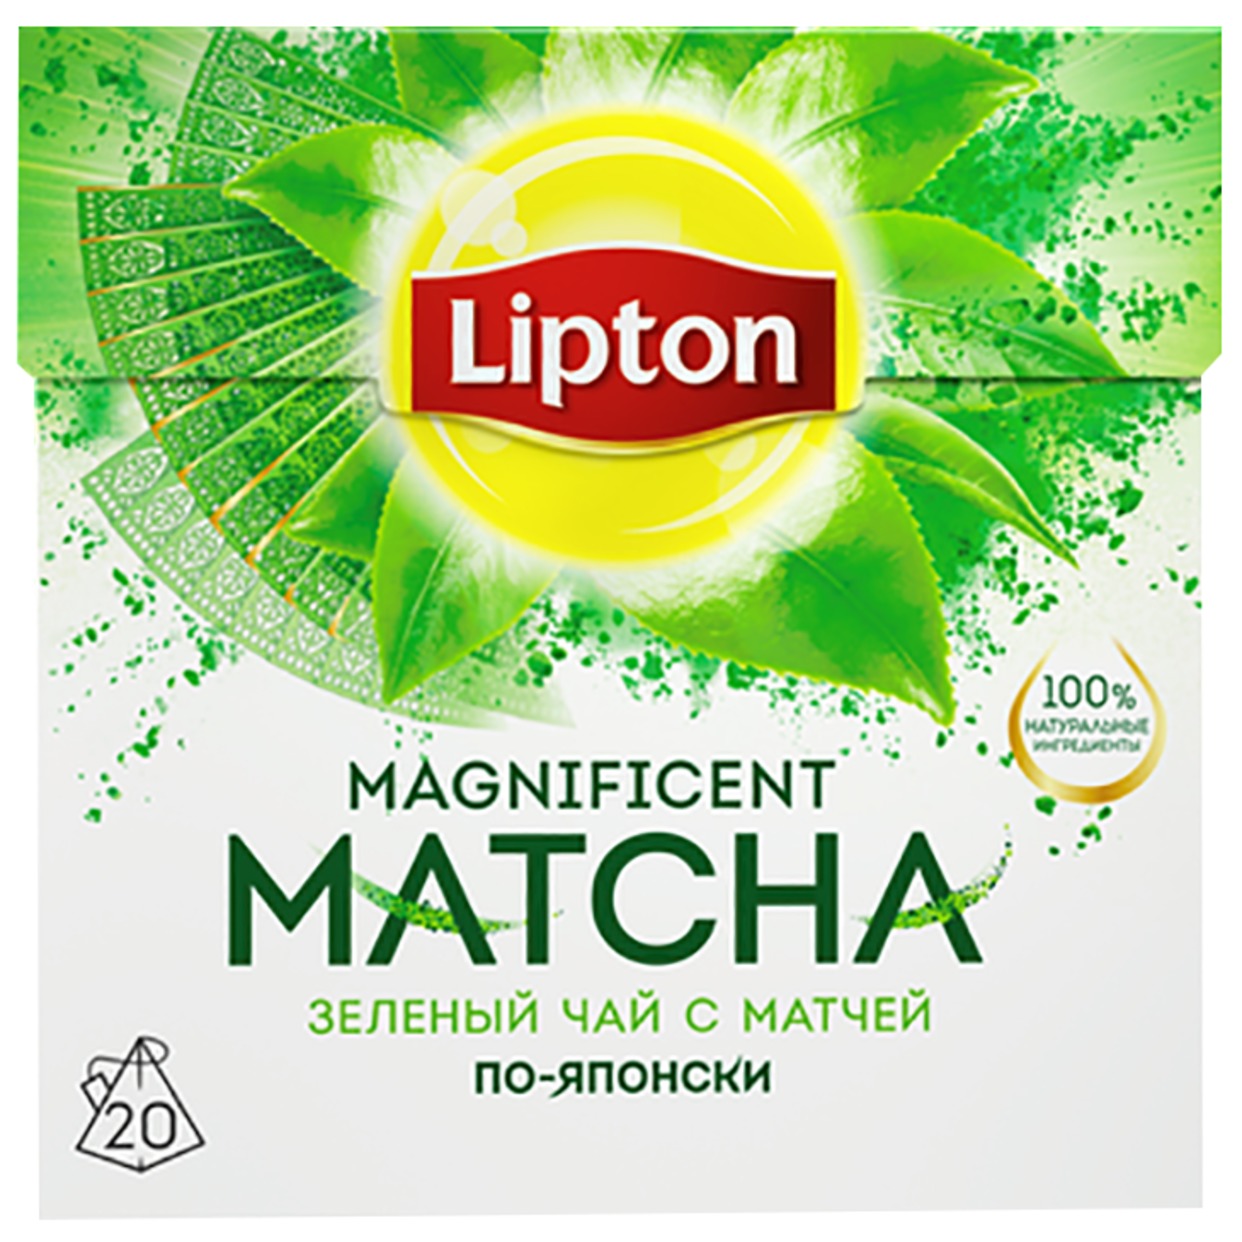 Lipton чай зеленый в пирамидках Magnificent Matcha 20 пакетиков по акции в Пятерочке